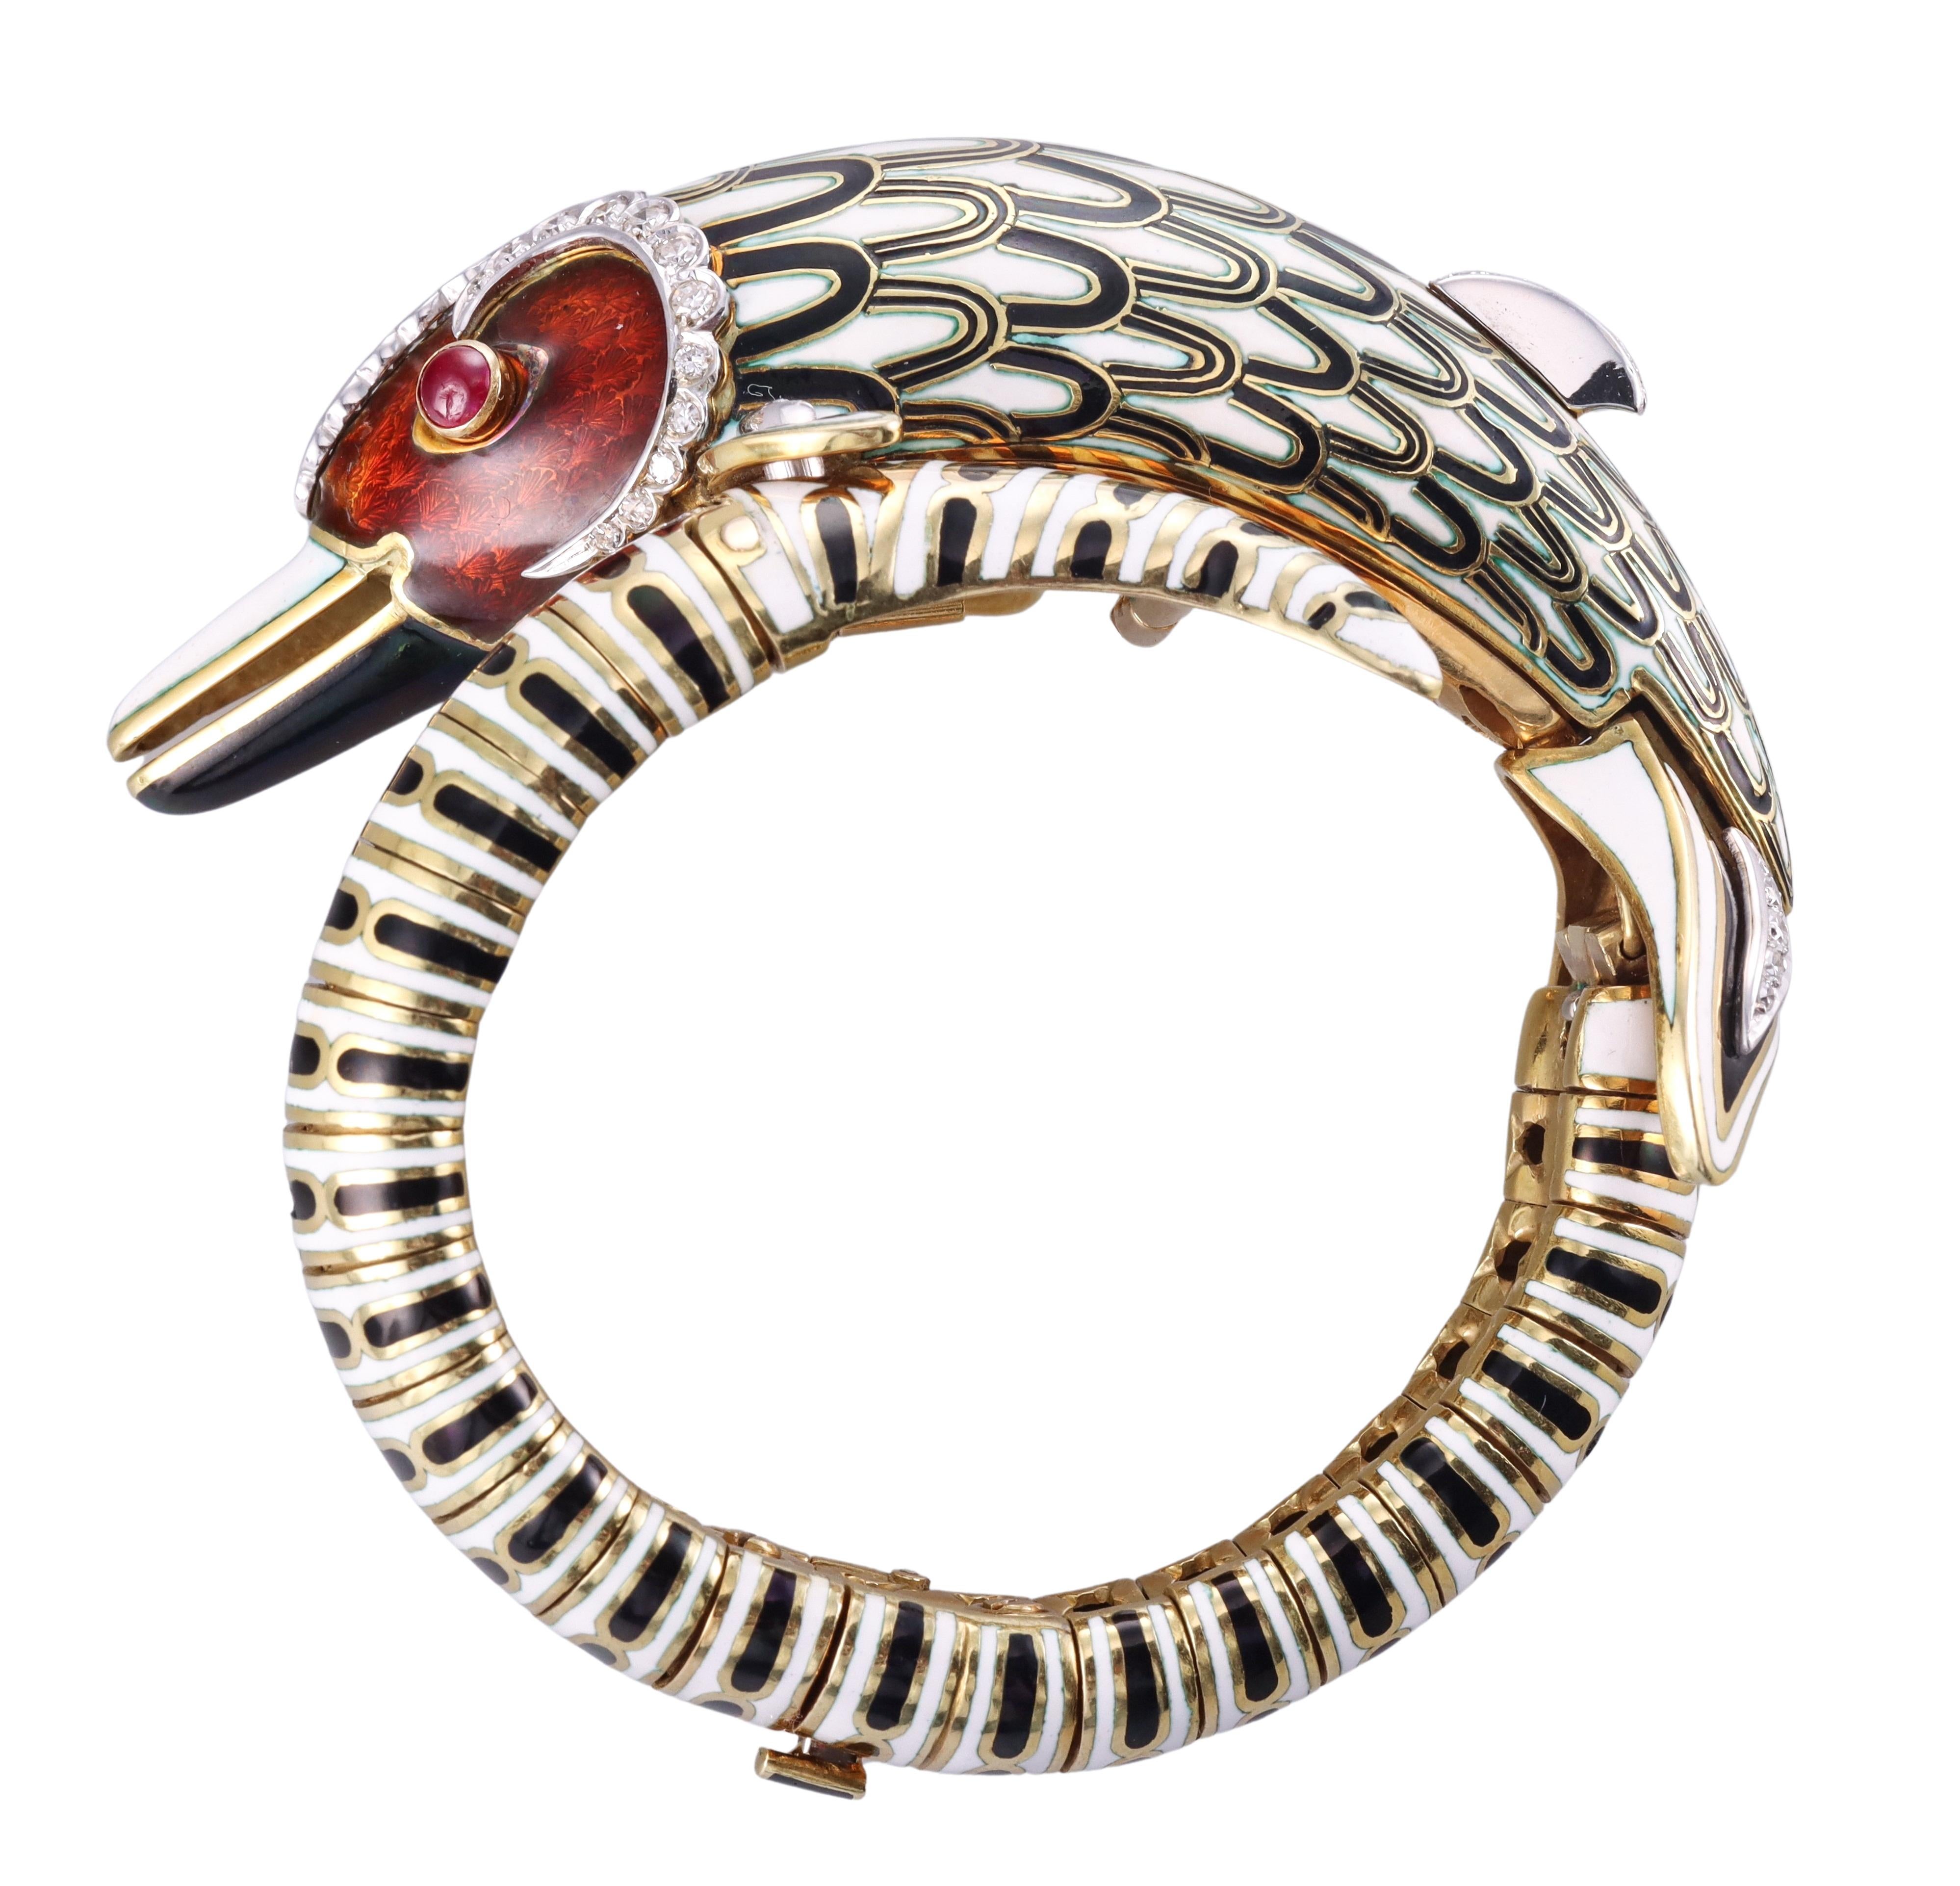 Beeindruckendes Armband aus 18 Karat Gelbgold von Frascarolo, besetzt mit Emaille, Rubinaugen und ca. 1,00ctw H/VS Diamanten. Das Armband stellt einen mythischen Delphin dar, der mit aufwändiger Emaille verziert ist. Das Armband passt an ein